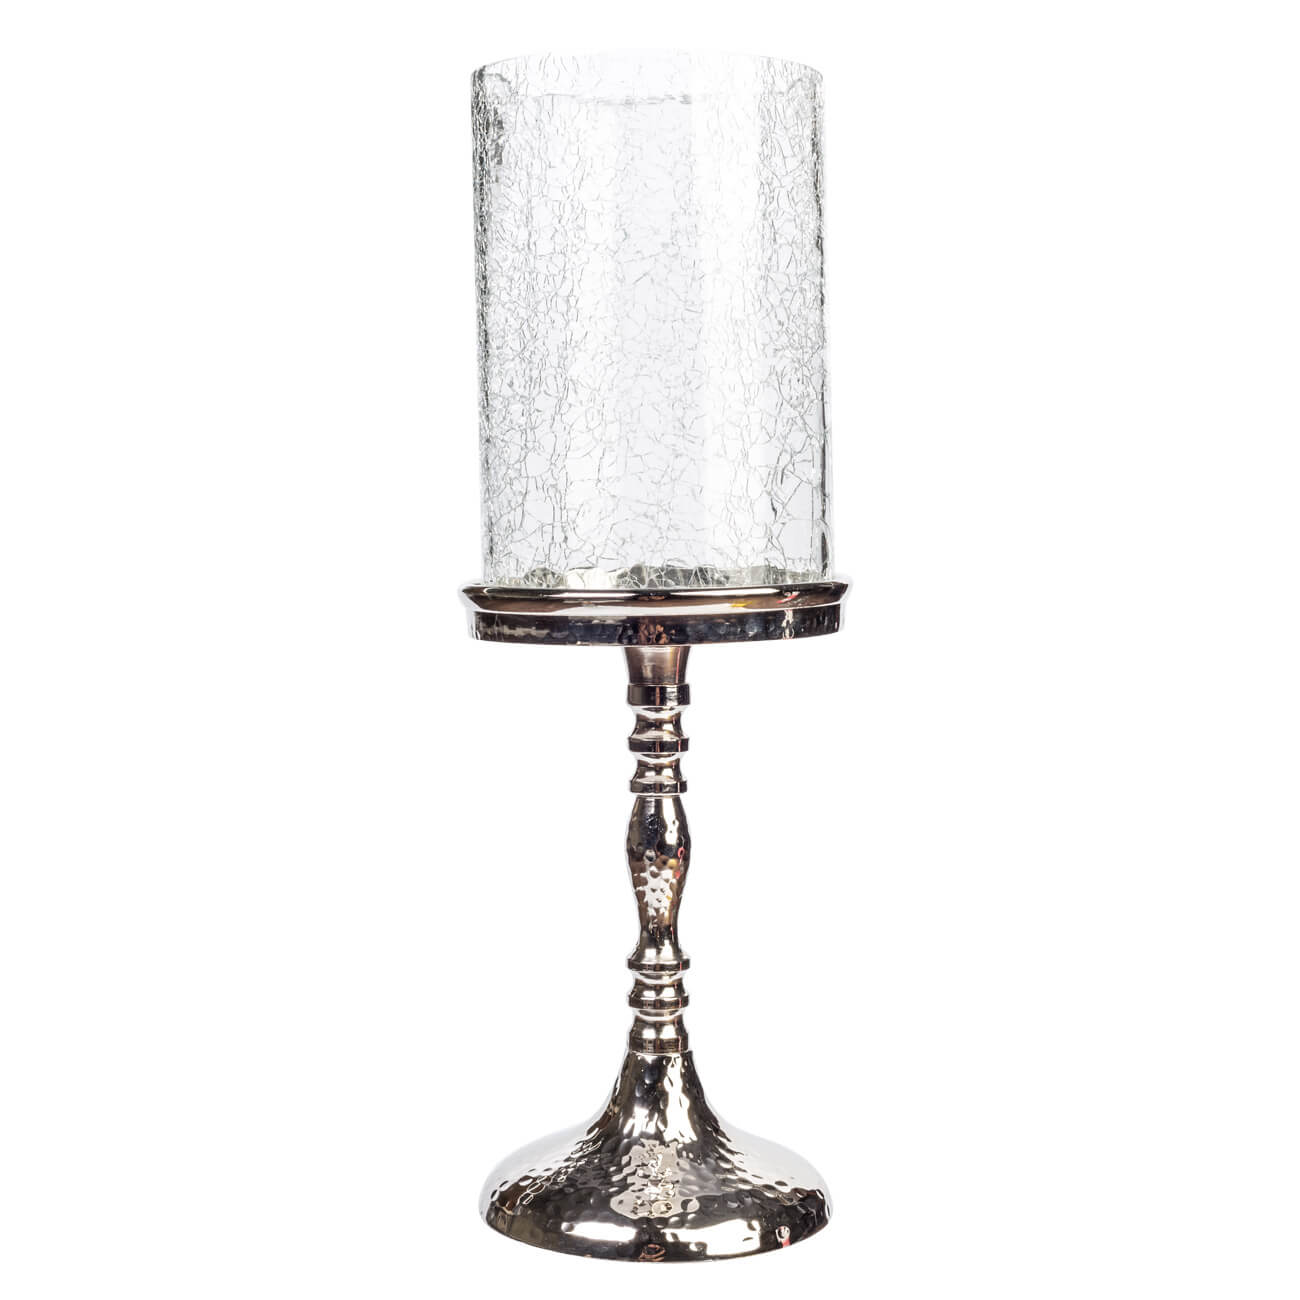 Kuchenland Подсвечник, 32 см, для одной свечи, на ножке, стекло/металл, серебристый, Кракелюр, Fantastic Ice